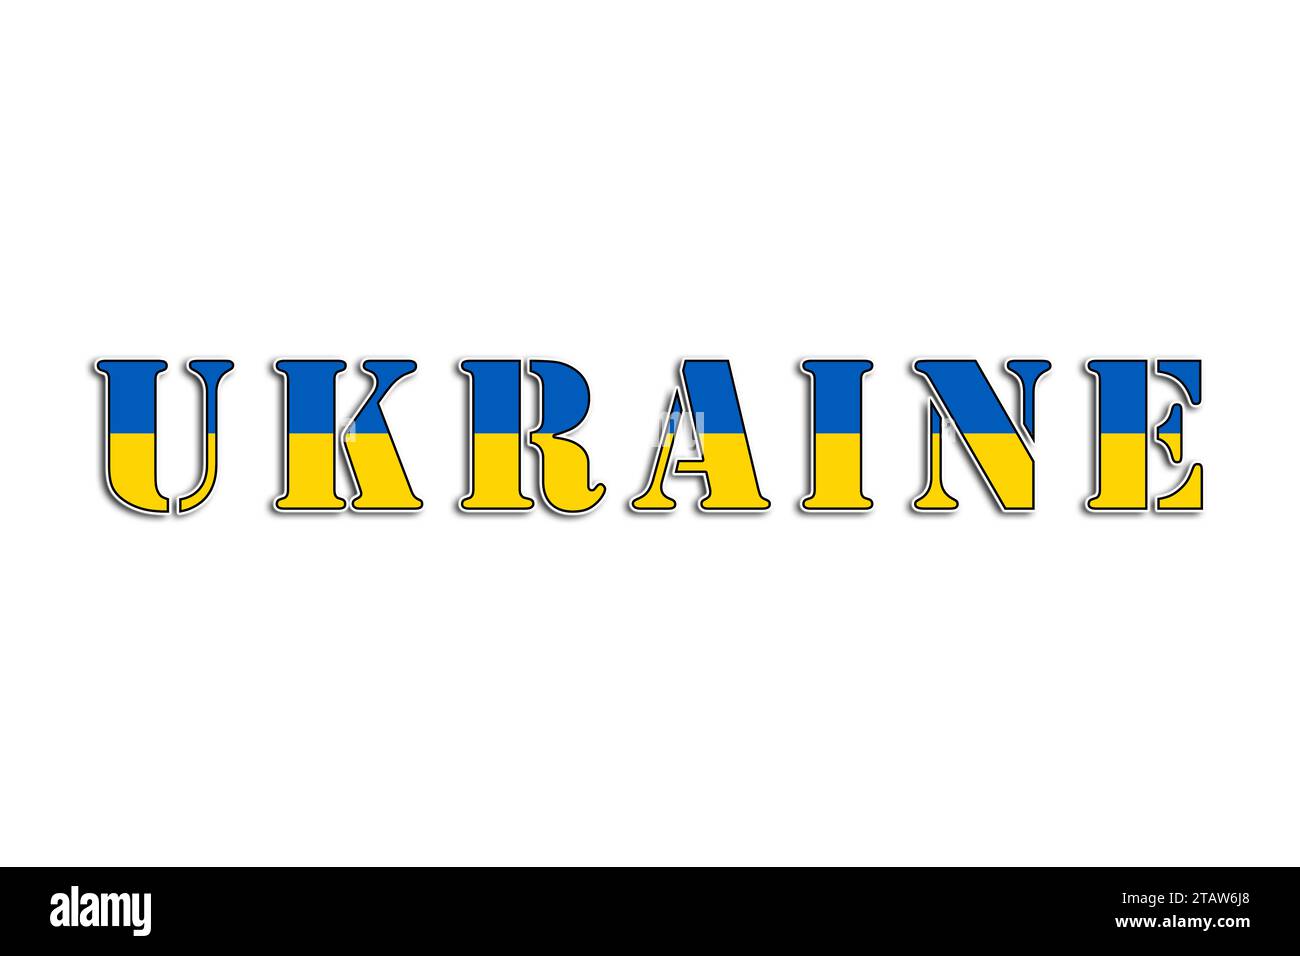 Ucraina, il nome del paese e i colori della bandiera, grafica illustrata del logo e del cuore per il popolo ucraino Foto Stock